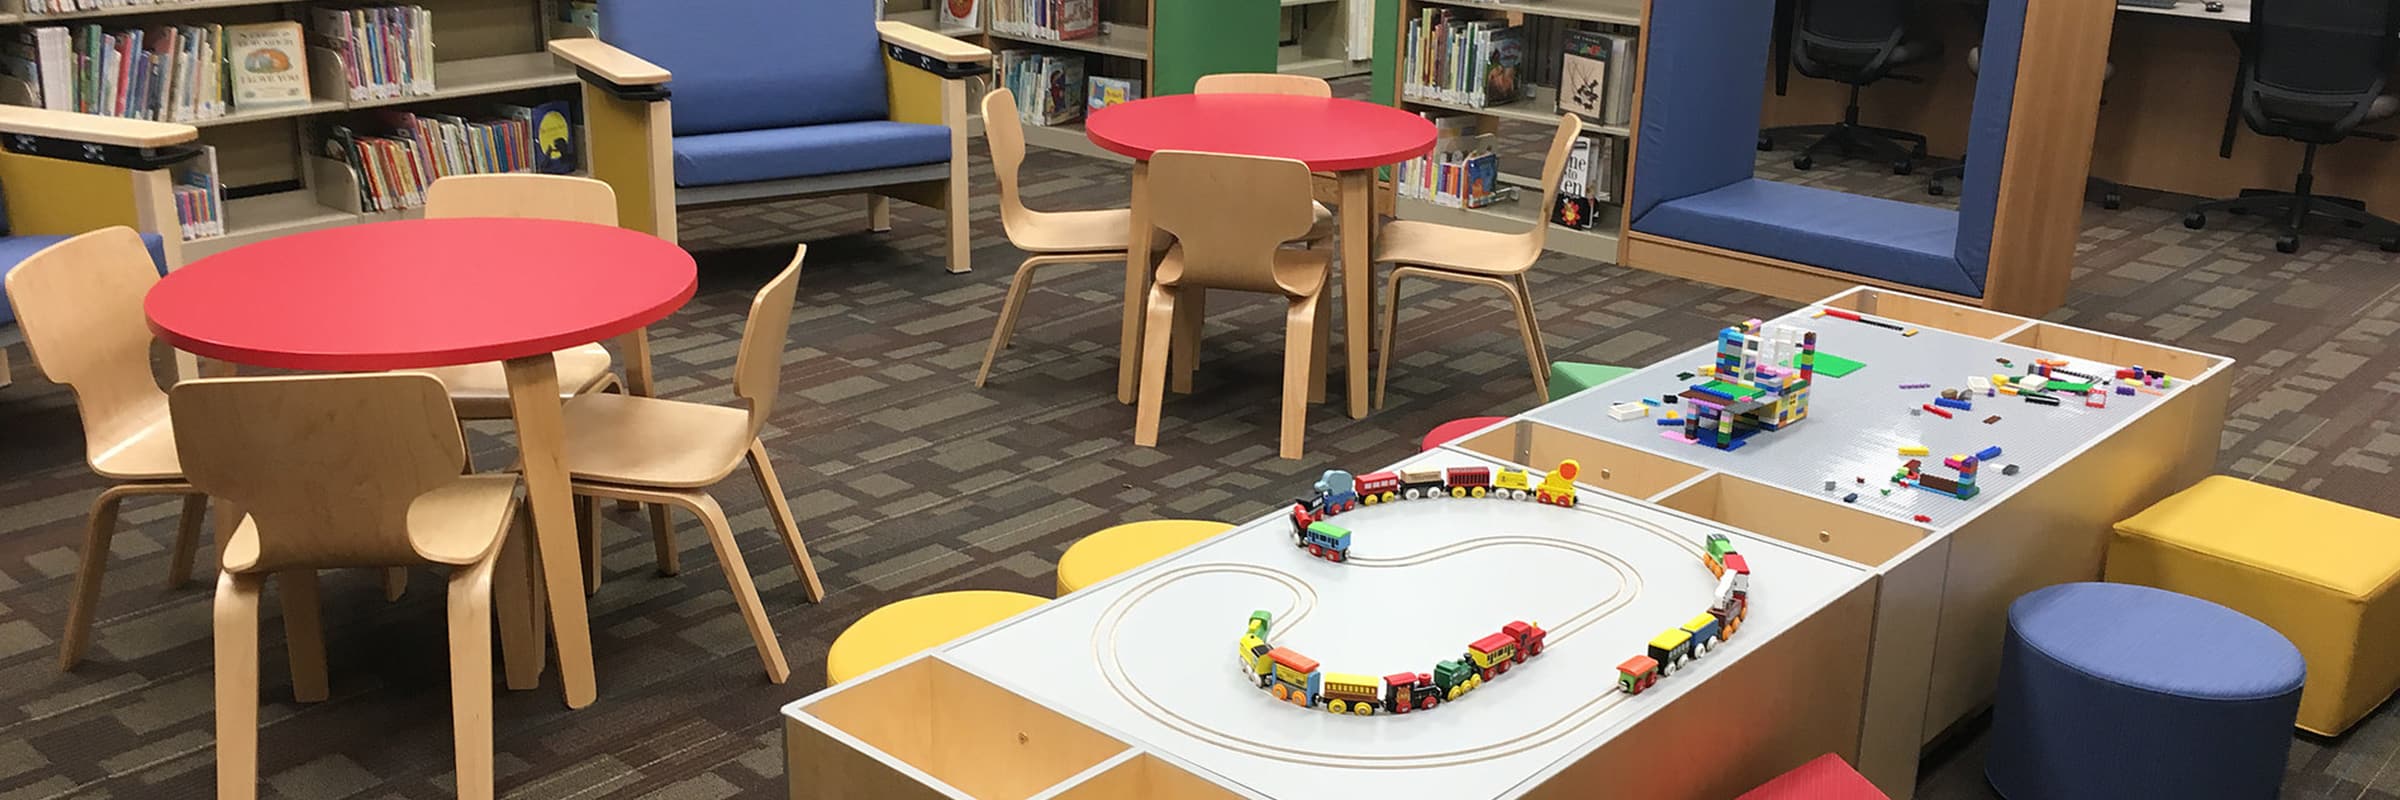 kids playroom at community library